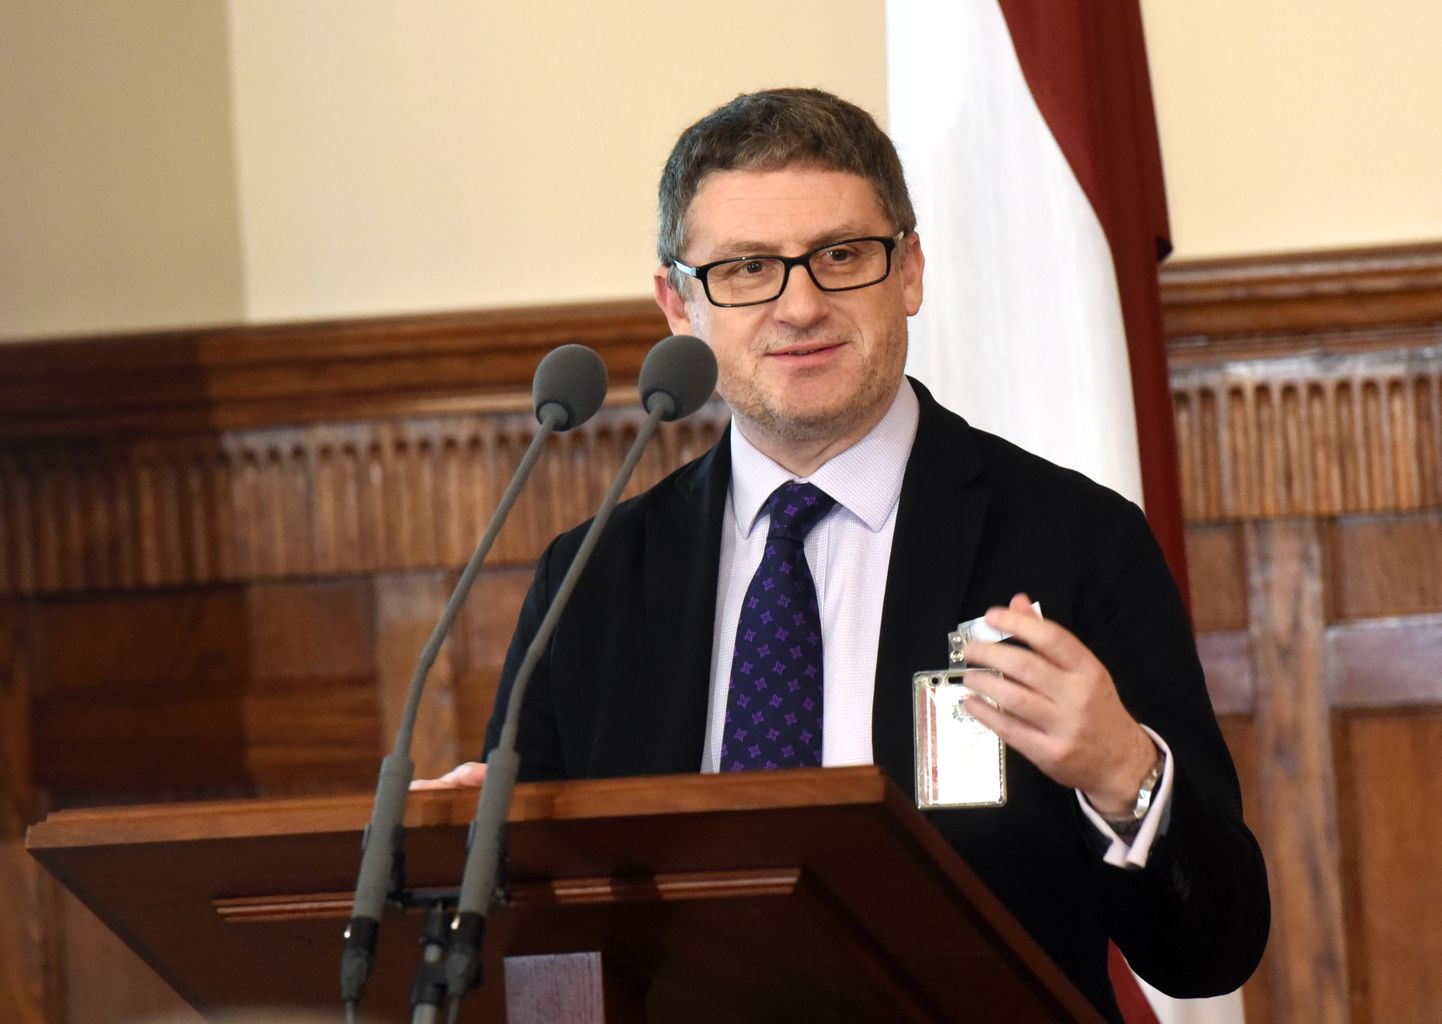 Prāgas starptautisko attiecību institūta vecākais pētnieks Marks Galeoti piedalās diskusijā "Latvijas drošība 21. gadsimtā. Viltus ziņas kā instruments sabiedrības viedokļa ietekmēšanā" Rīgas pilī.